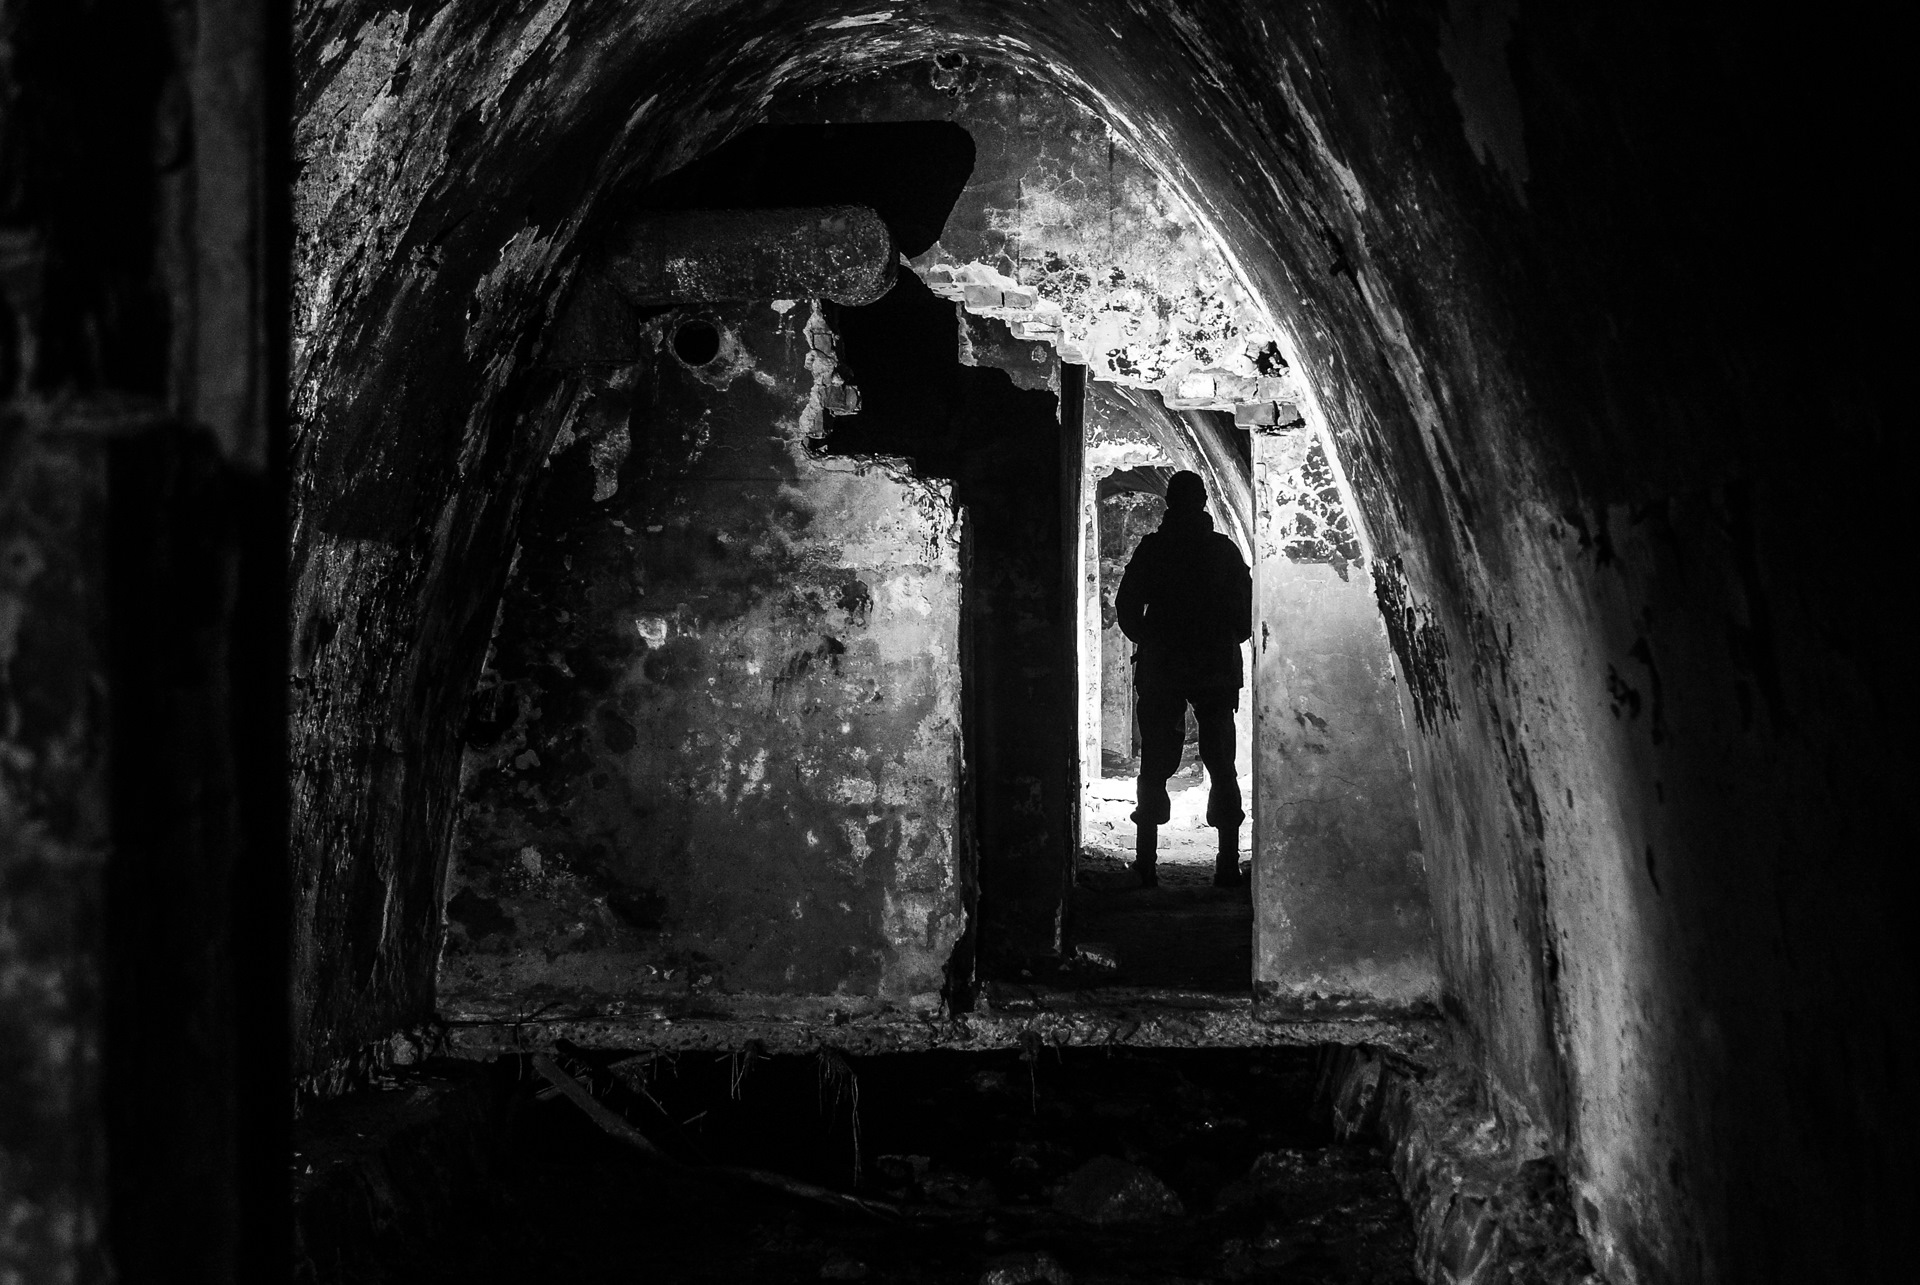 Погасив свет комната погрузилась во мрак впр. Калининградская область мрак. Дом с колодцем во мраке. Киев погрузился во мрак.